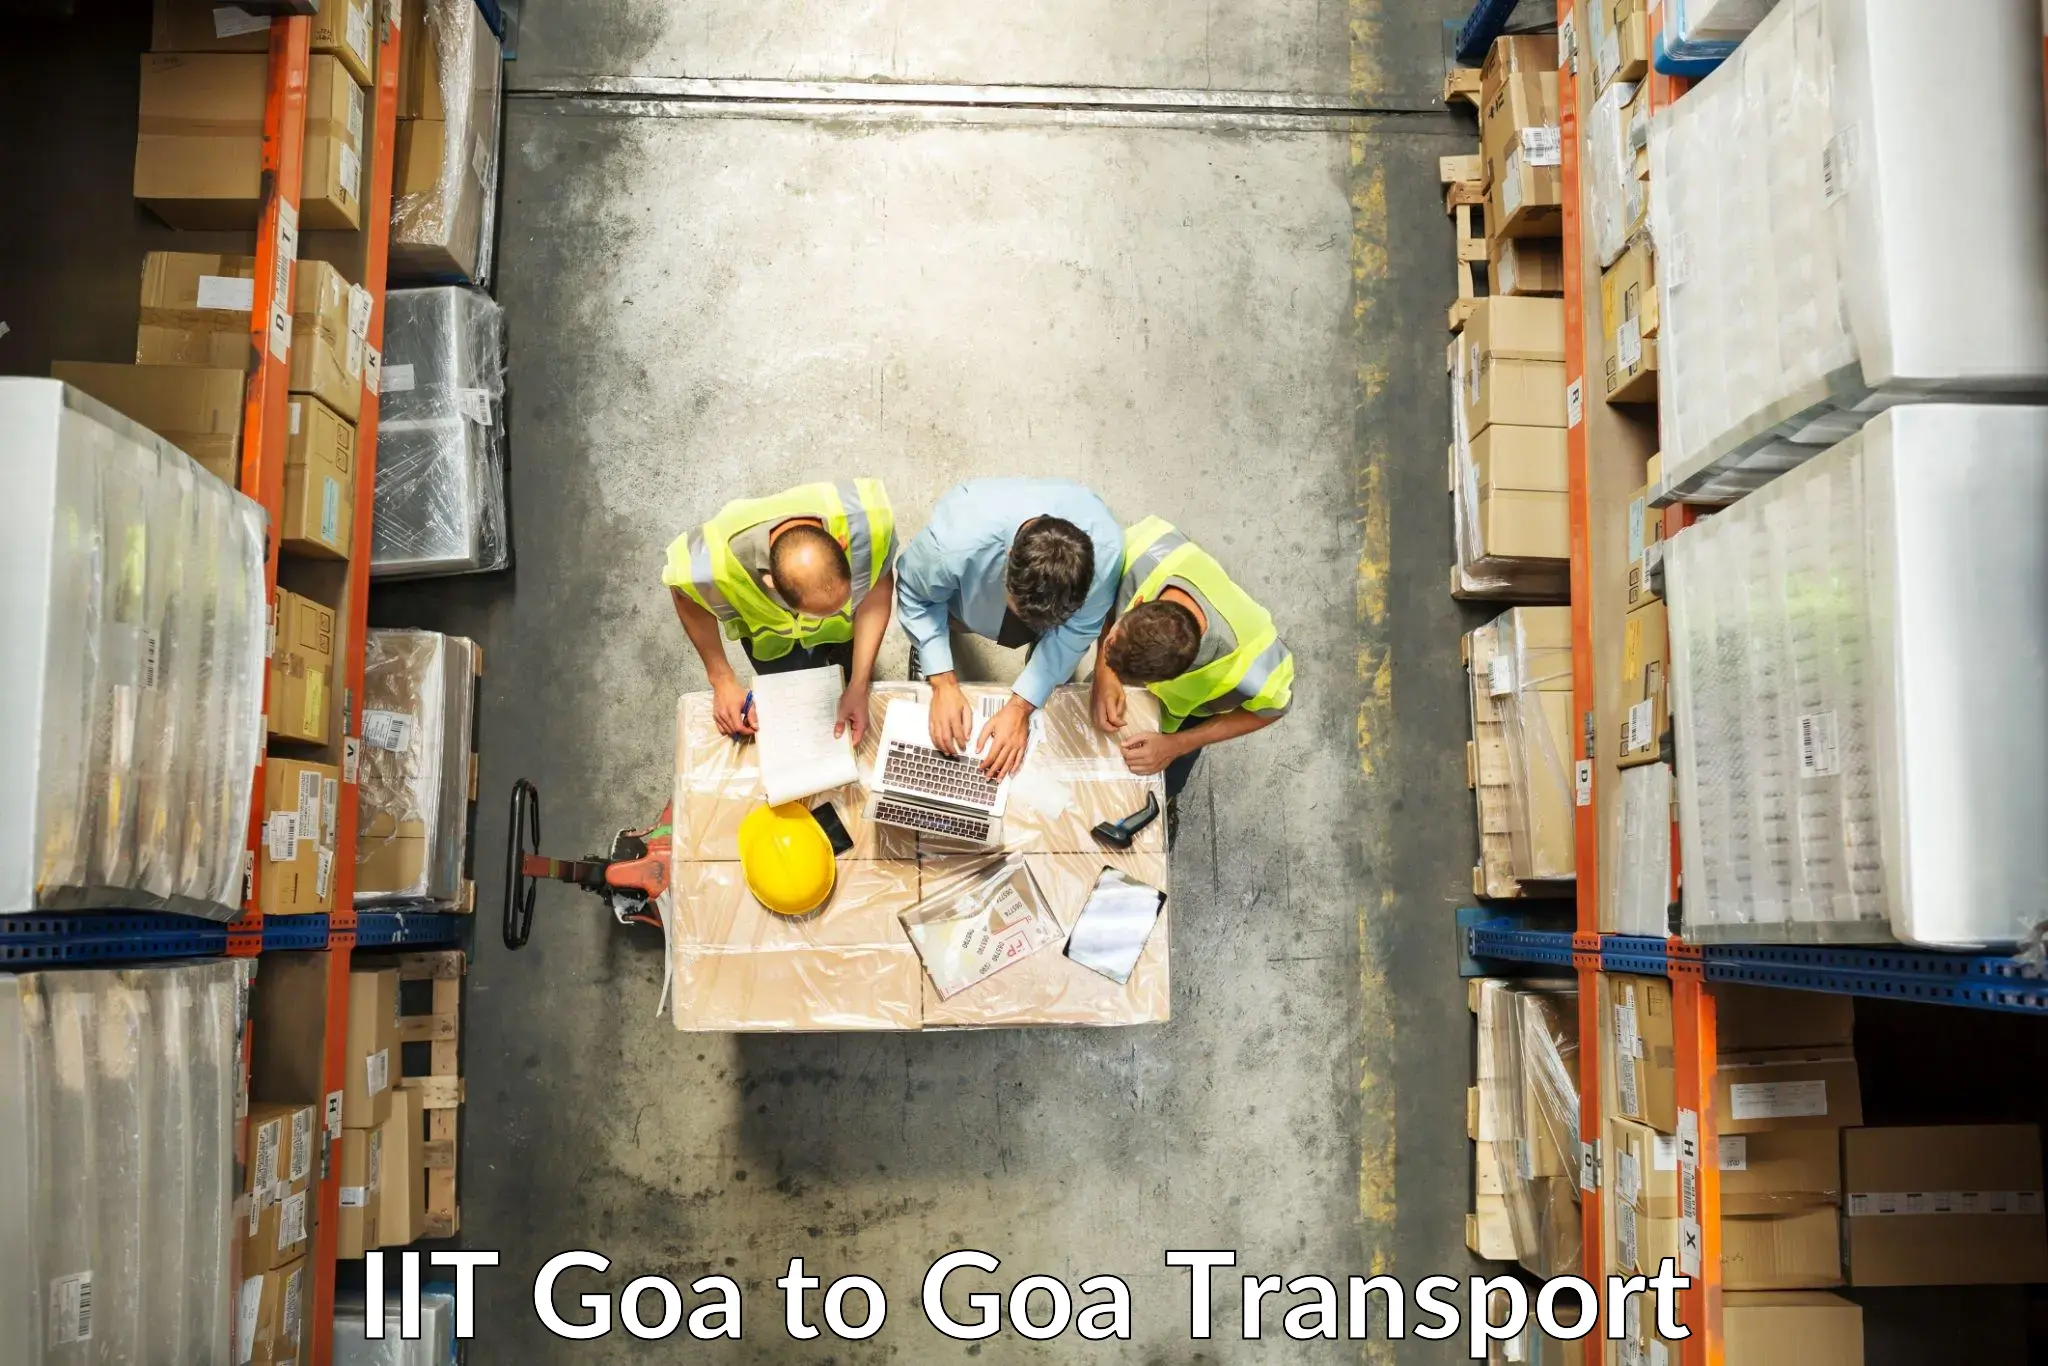 Bike shipping service IIT Goa to South Goa